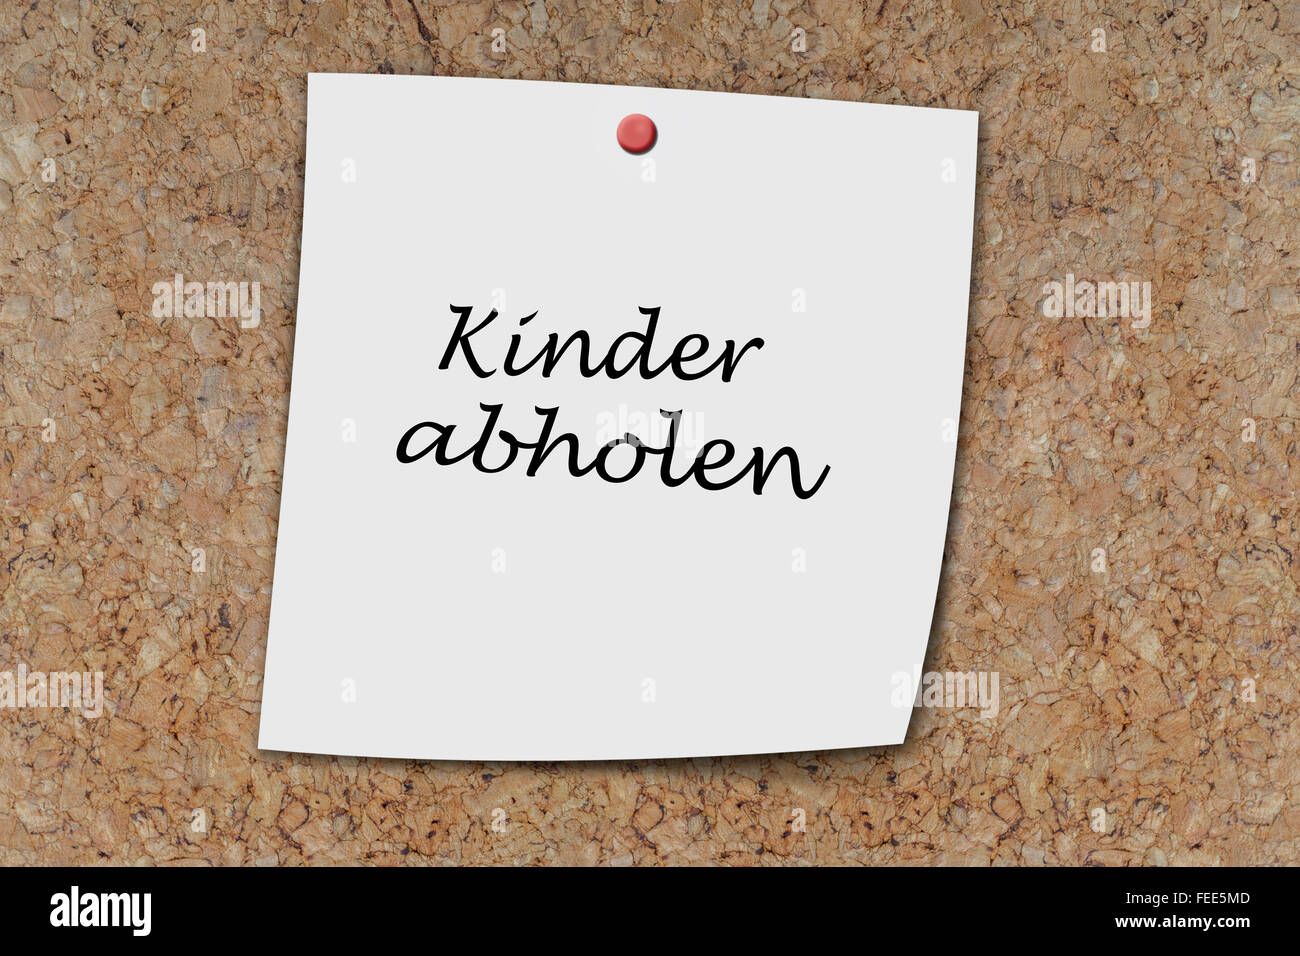 Kinder abholen (German pick up kids) written on a memo pined on a cork board Stock Photo